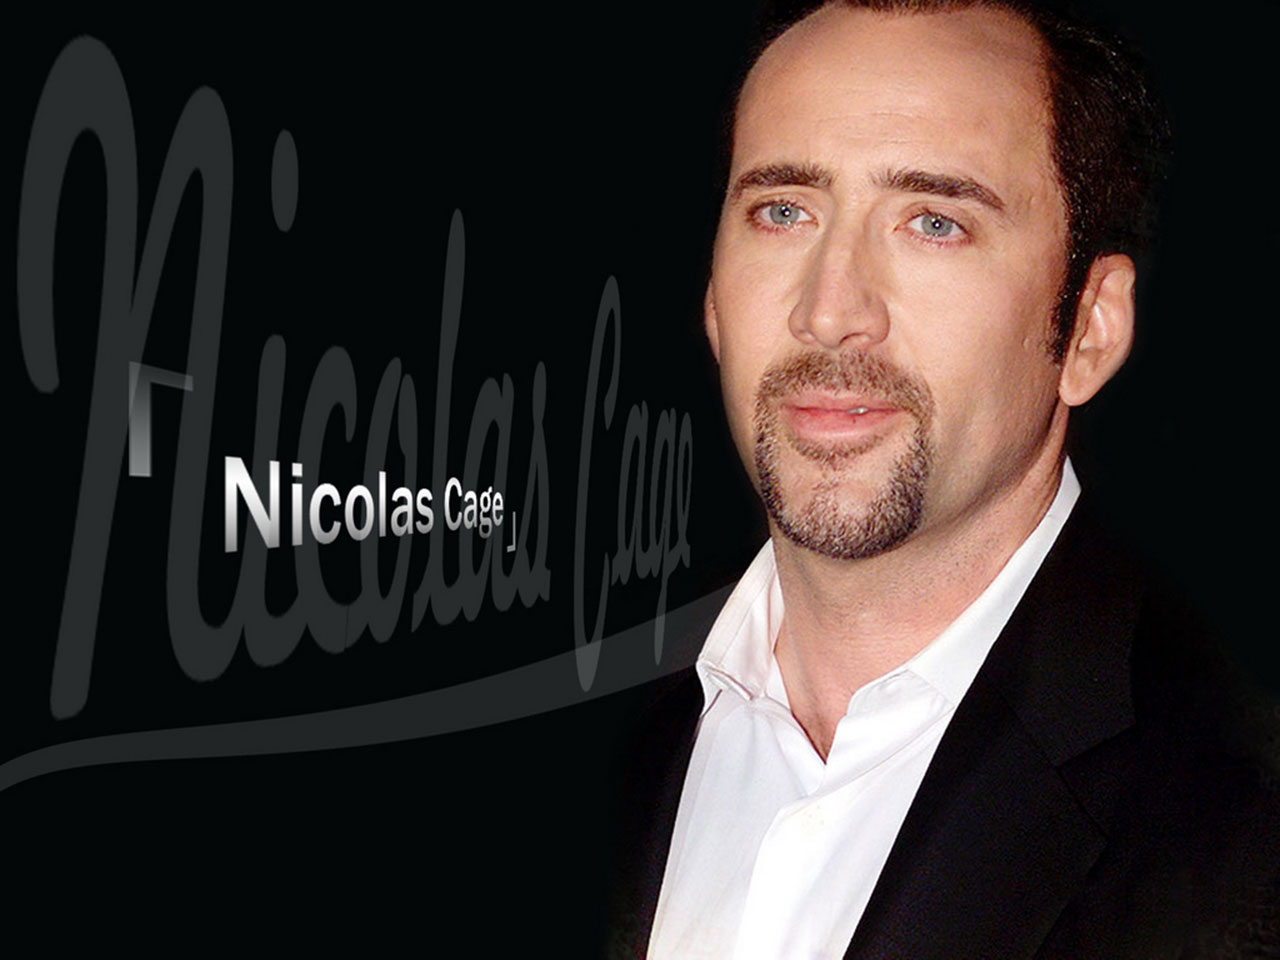  Nicolas Cage Desktop Wallpaper